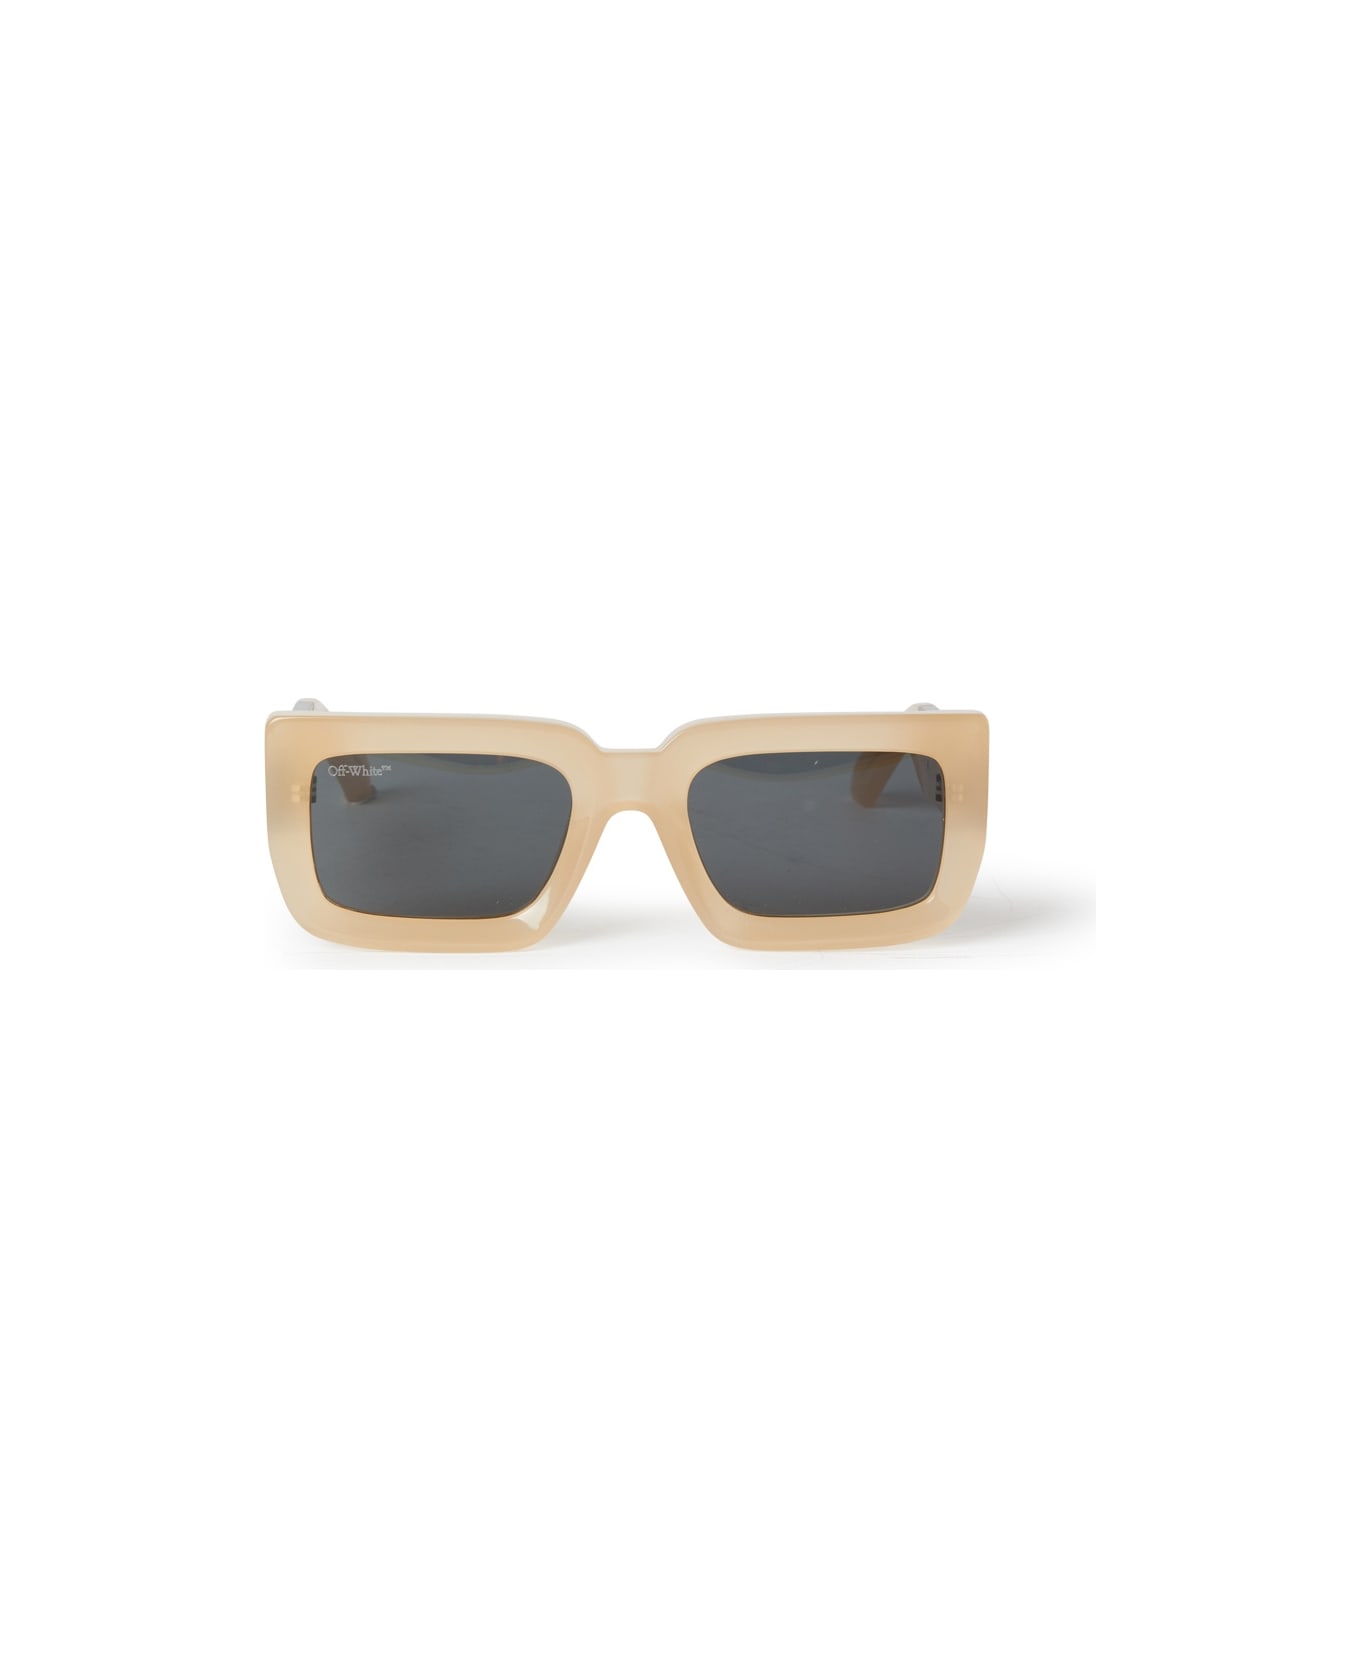 Off-White BOSTON SUNGLASSES Sunglasses - Sand